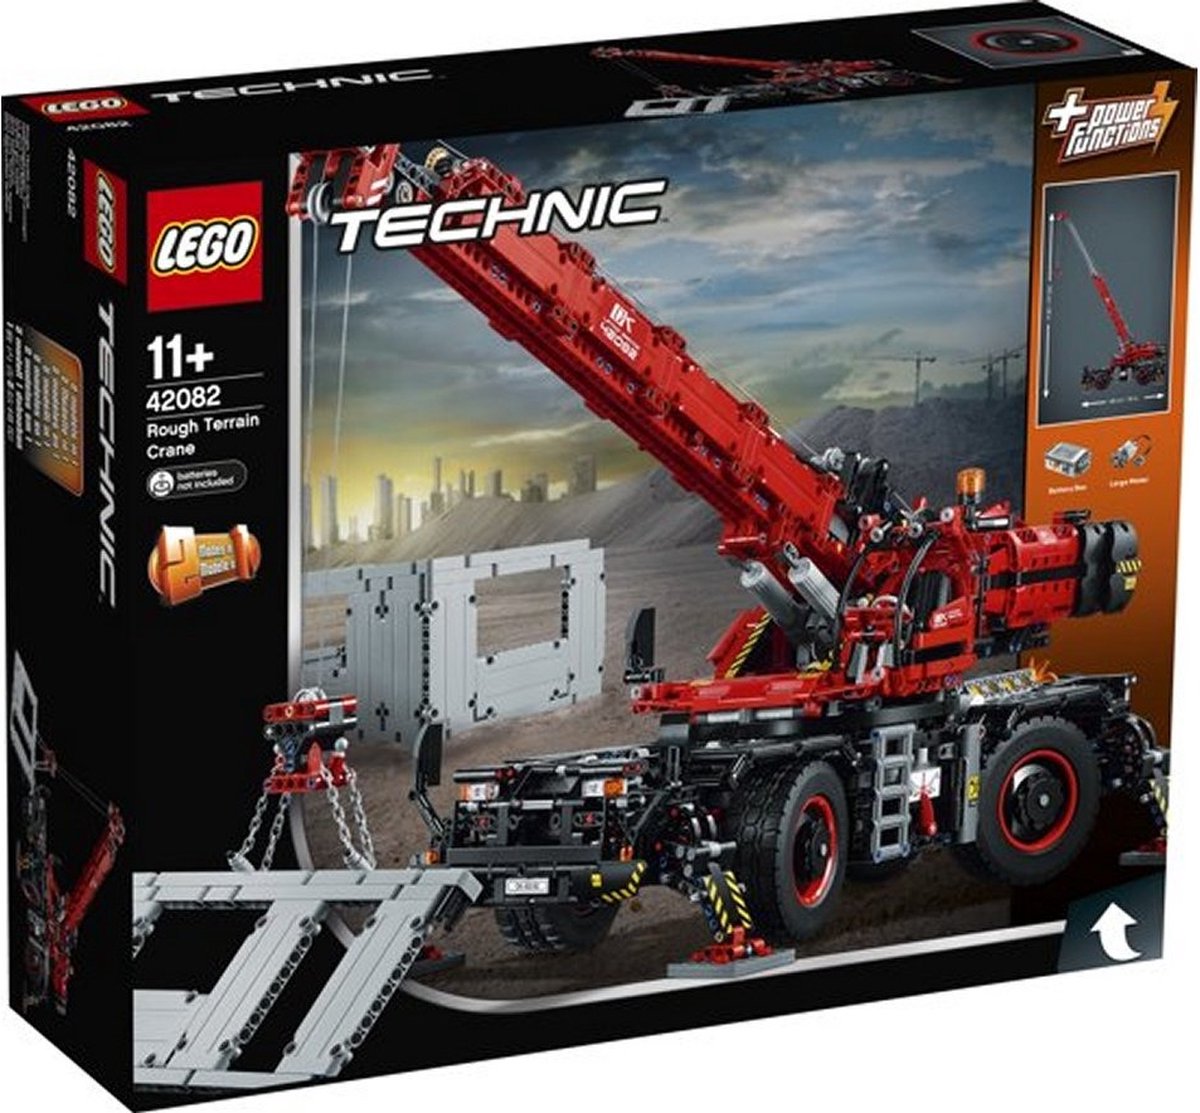 Lego 42043 Technic : Camion Mercedes-Benz Arocs 3245 - Jeux et jouets LEGO  ® - Avenue des Jeux